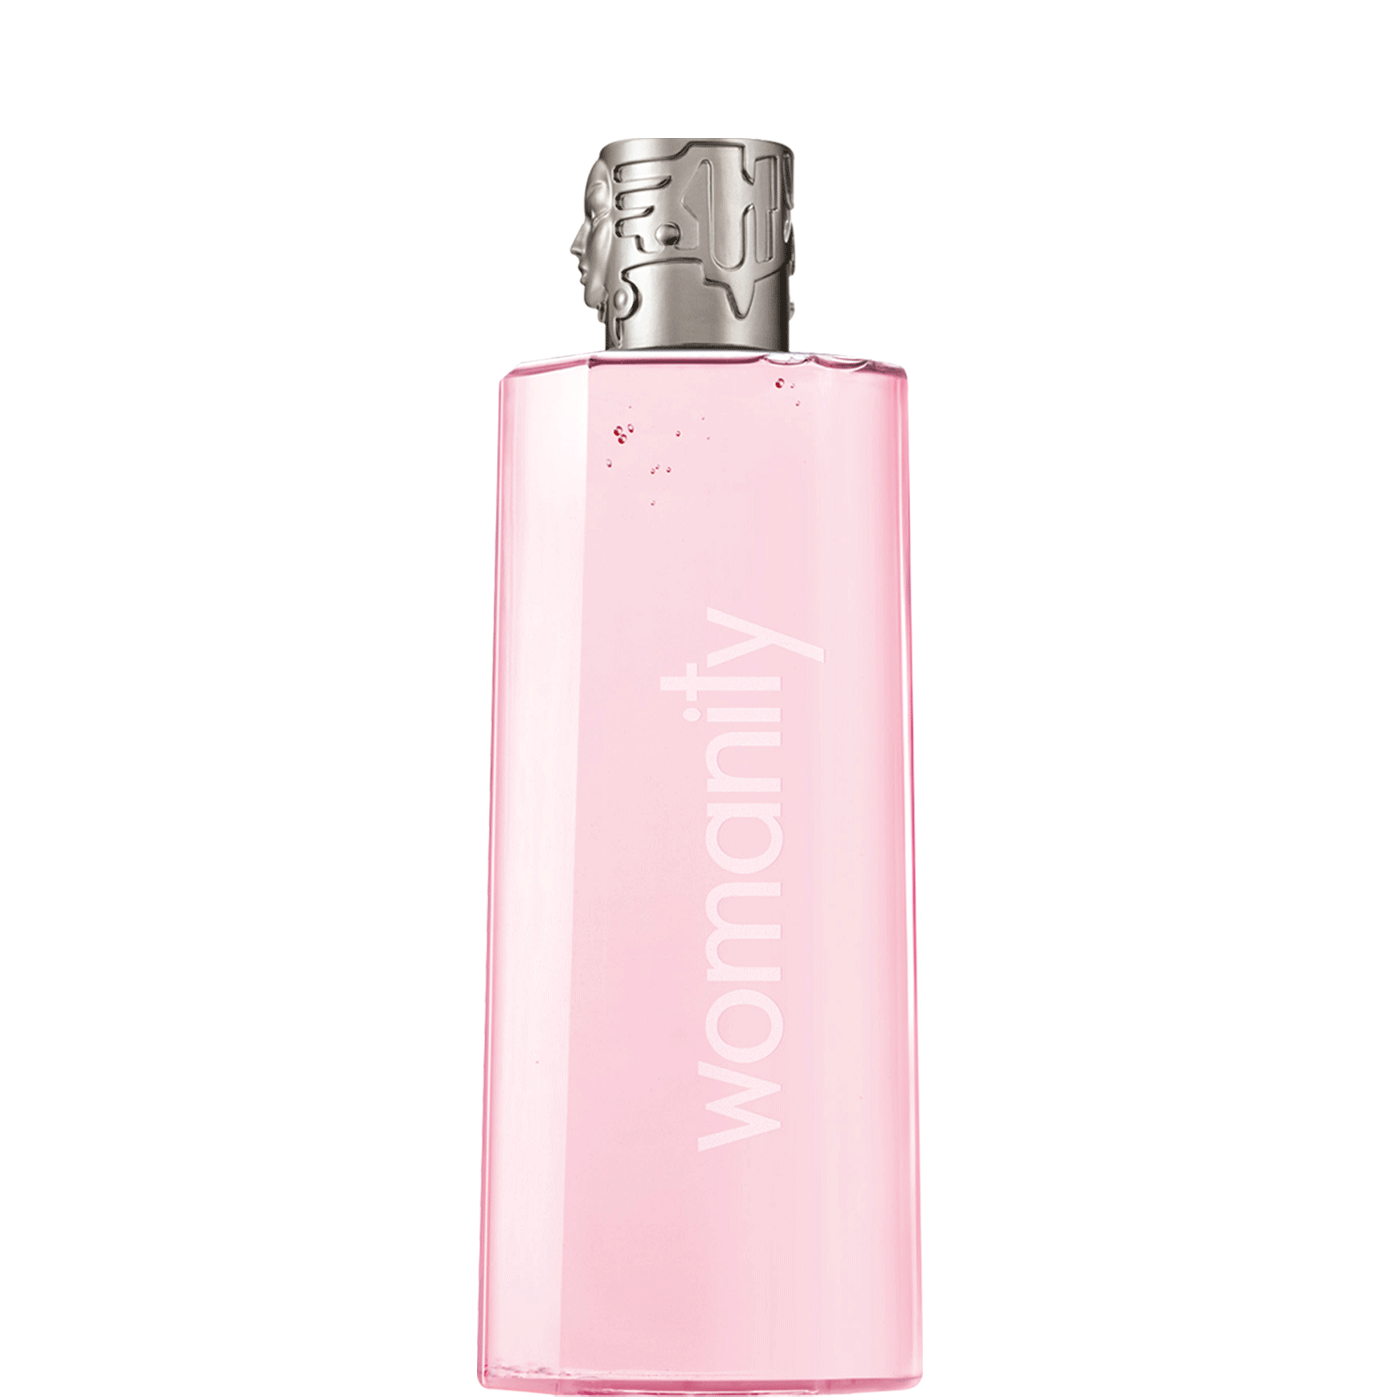 Thierry Mugler shower gel 200ml is light pink